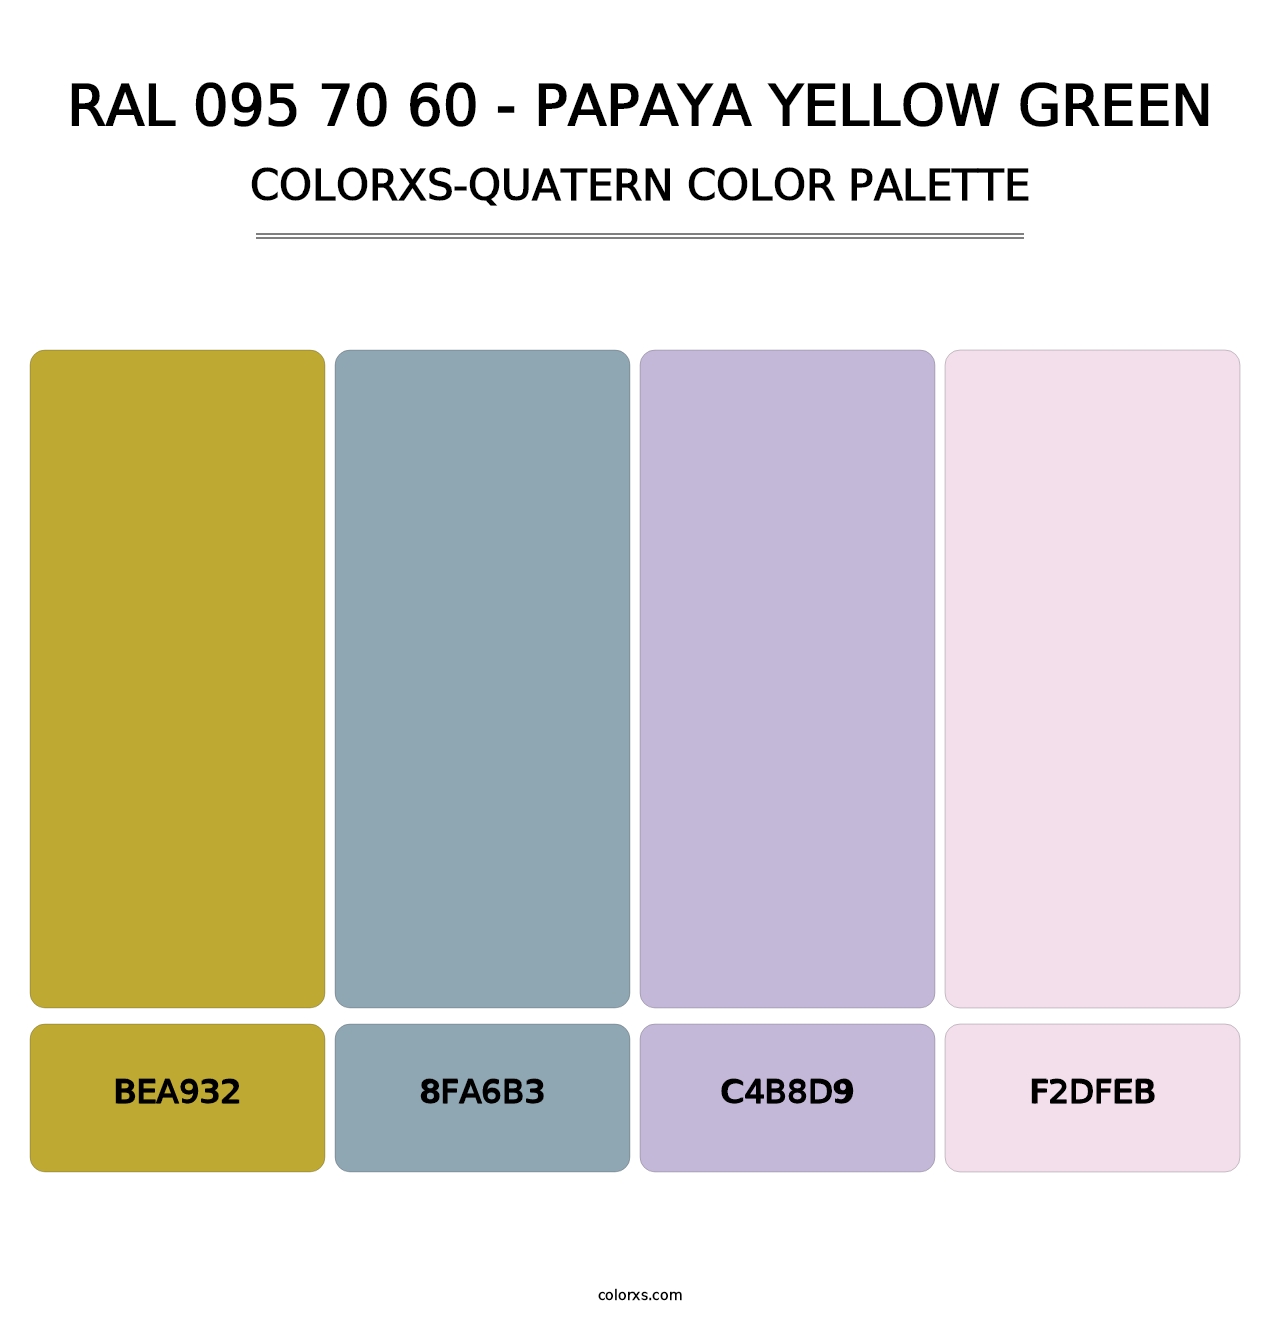 RAL 095 70 60 - Papaya Yellow Green - Colorxs Quatern Palette